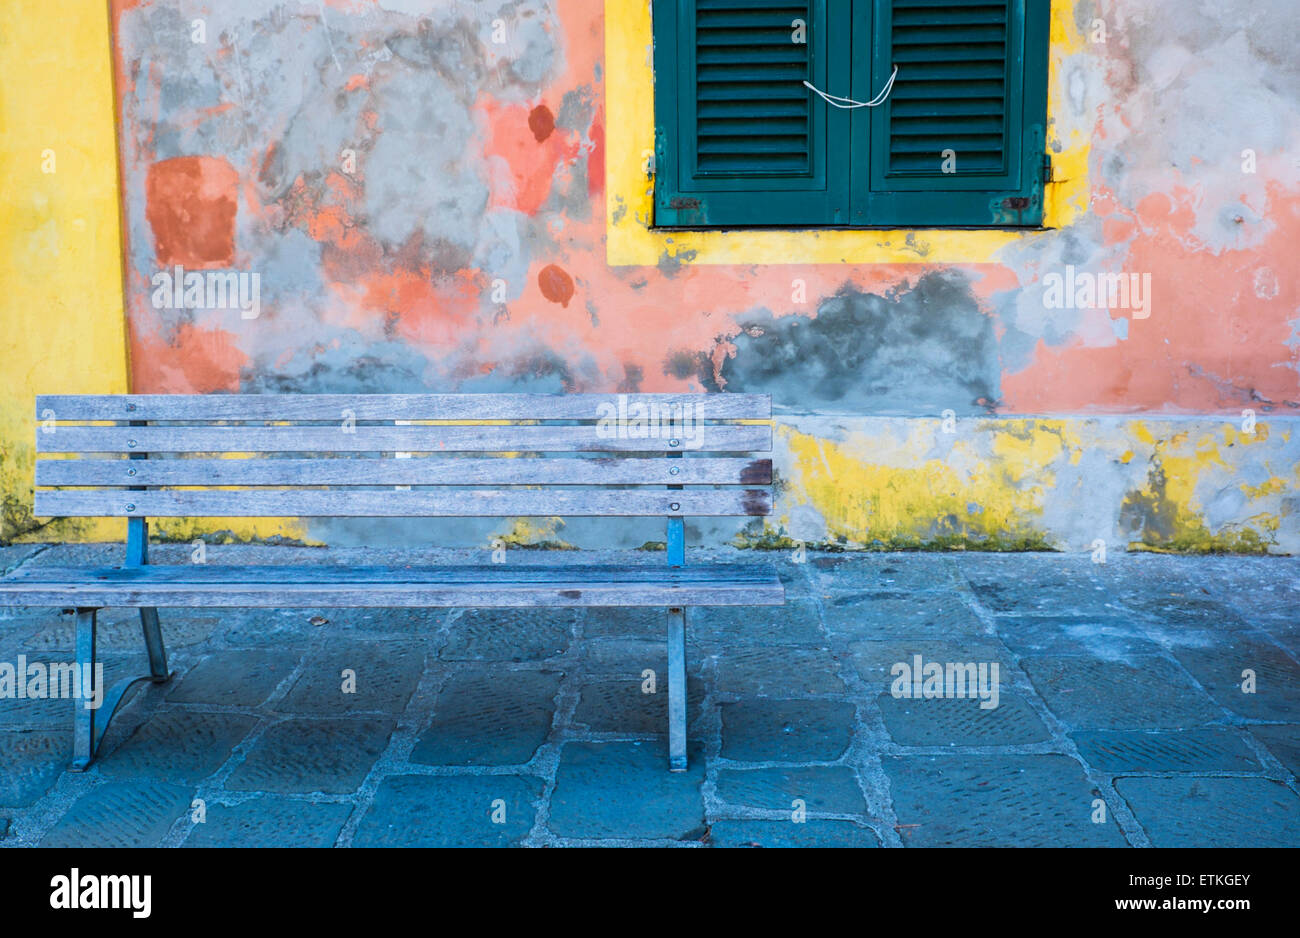 Panca di fronte ad una parete colorata, Banca vor einer farbenfrohen Wand, Portofino, Italia Foto Stock